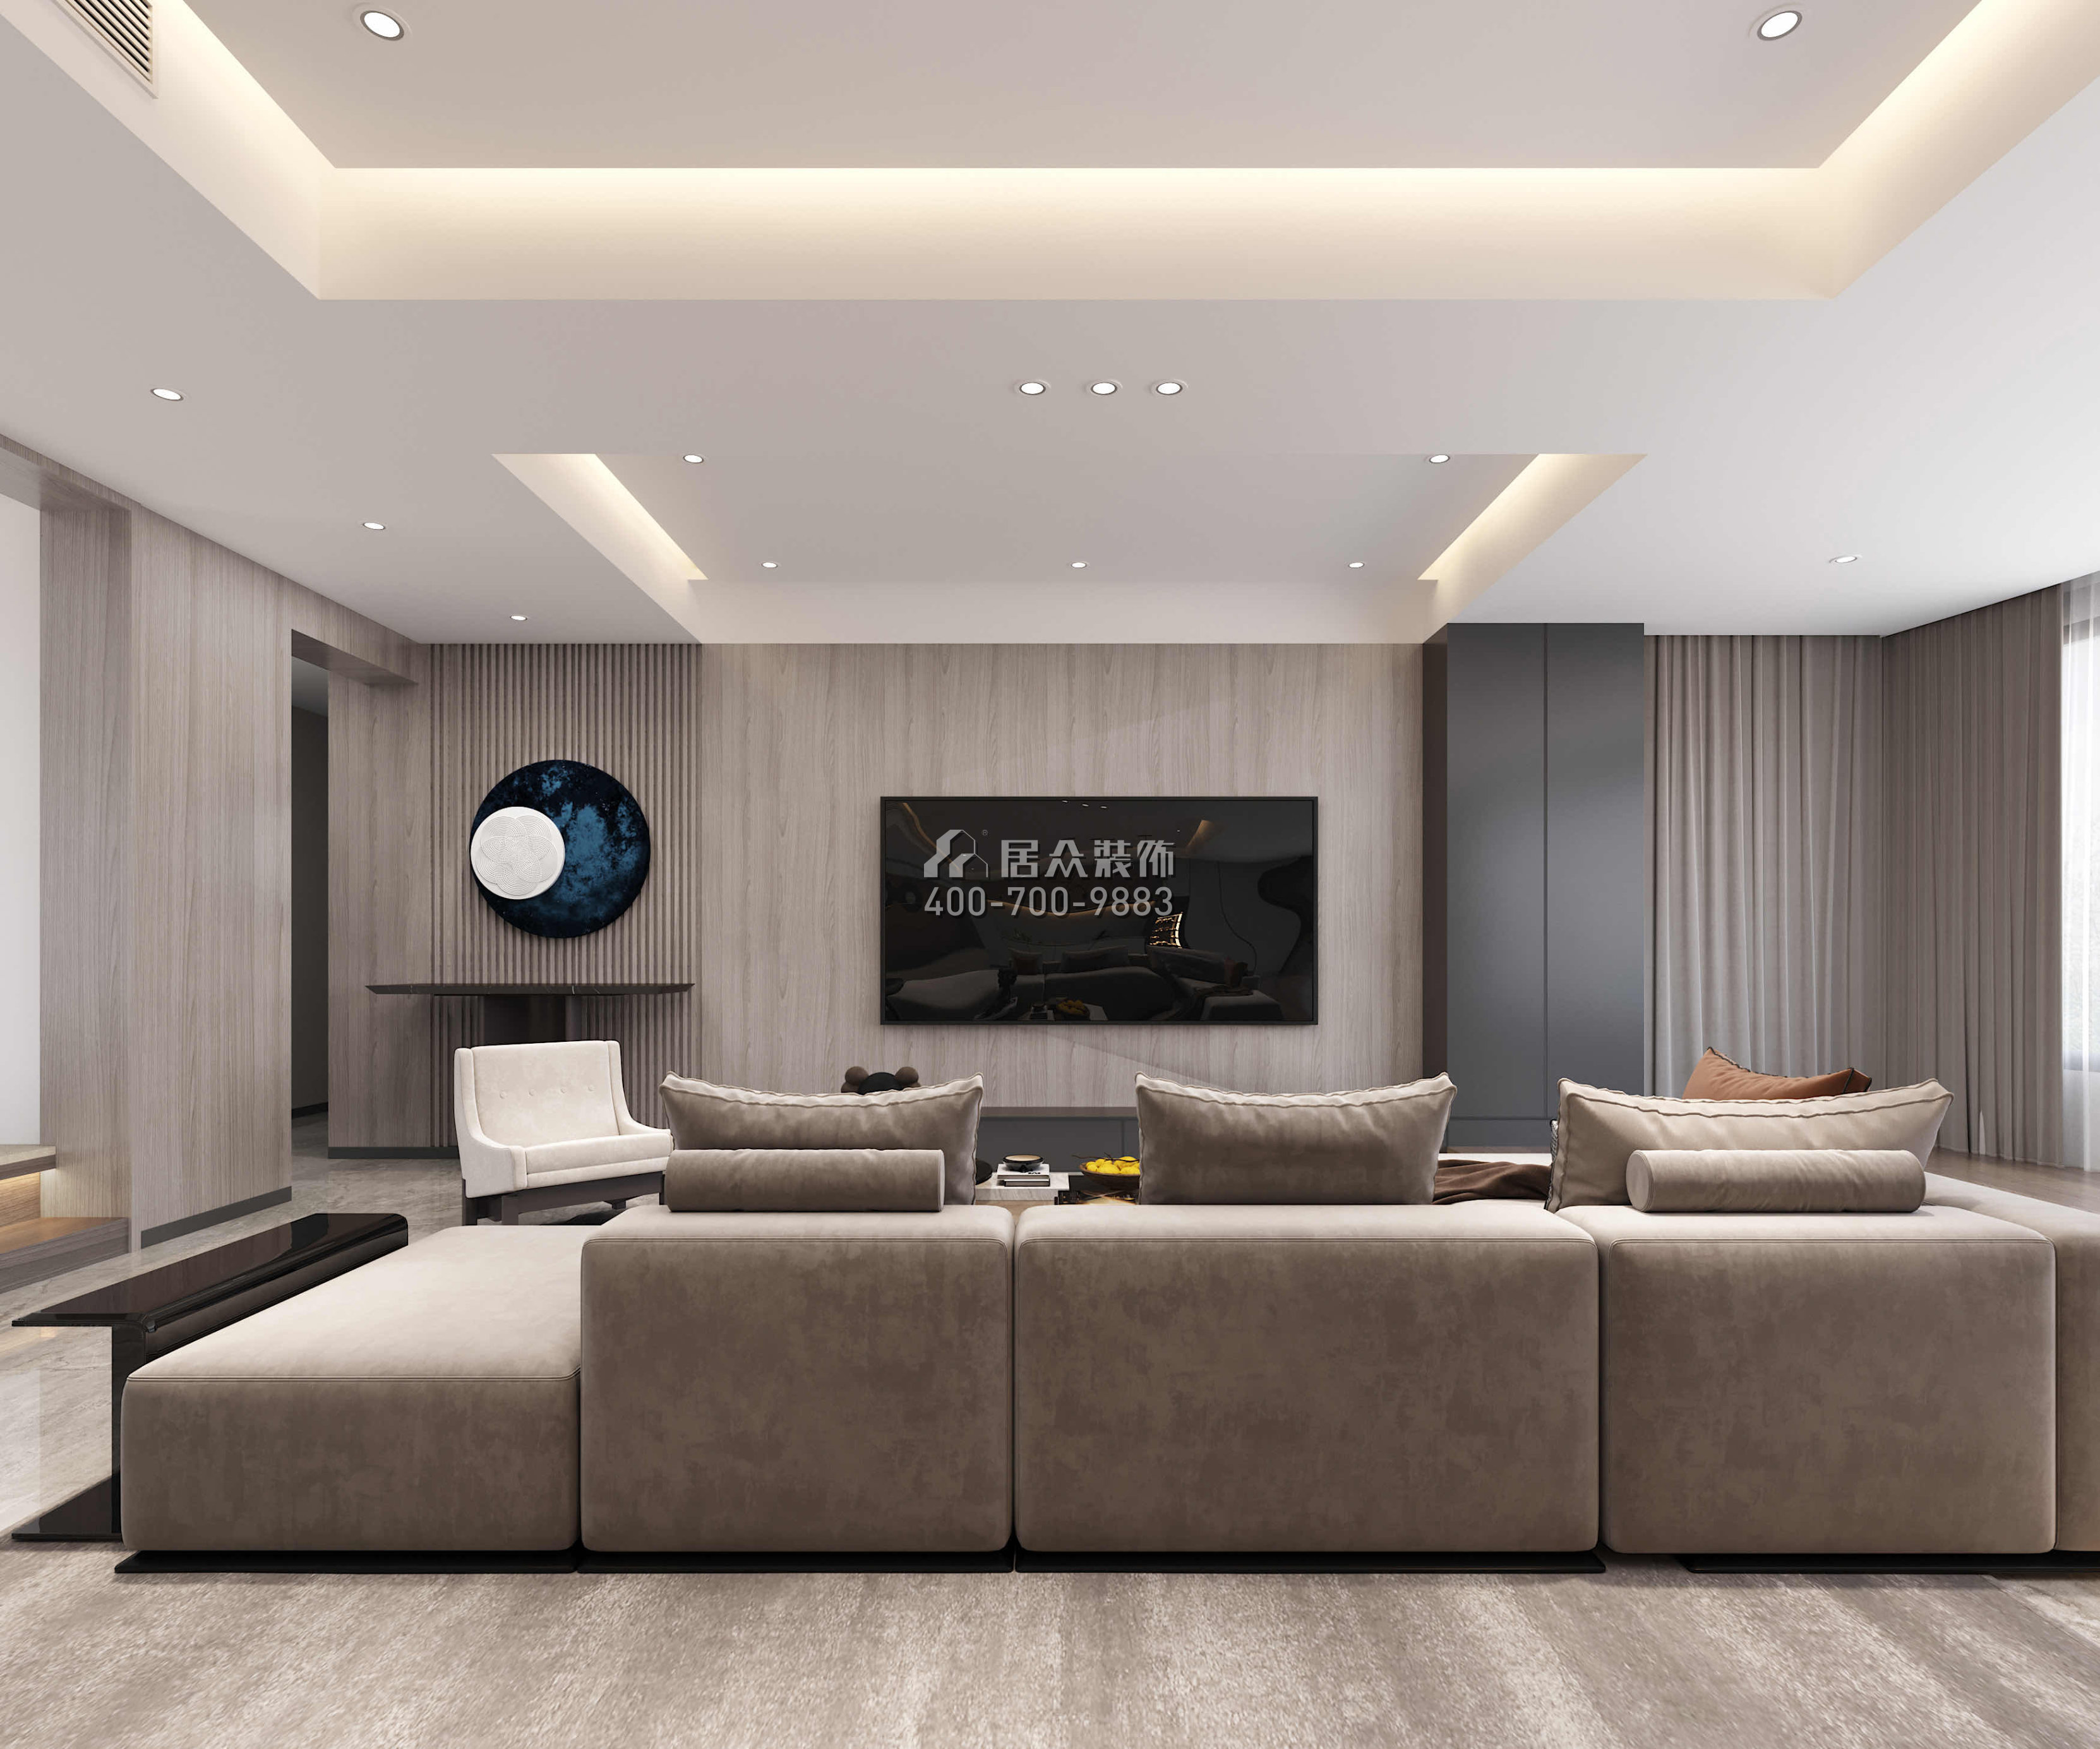 華發綠洋灣168平方米現代簡約風格平層戶型客廳裝修效果圖